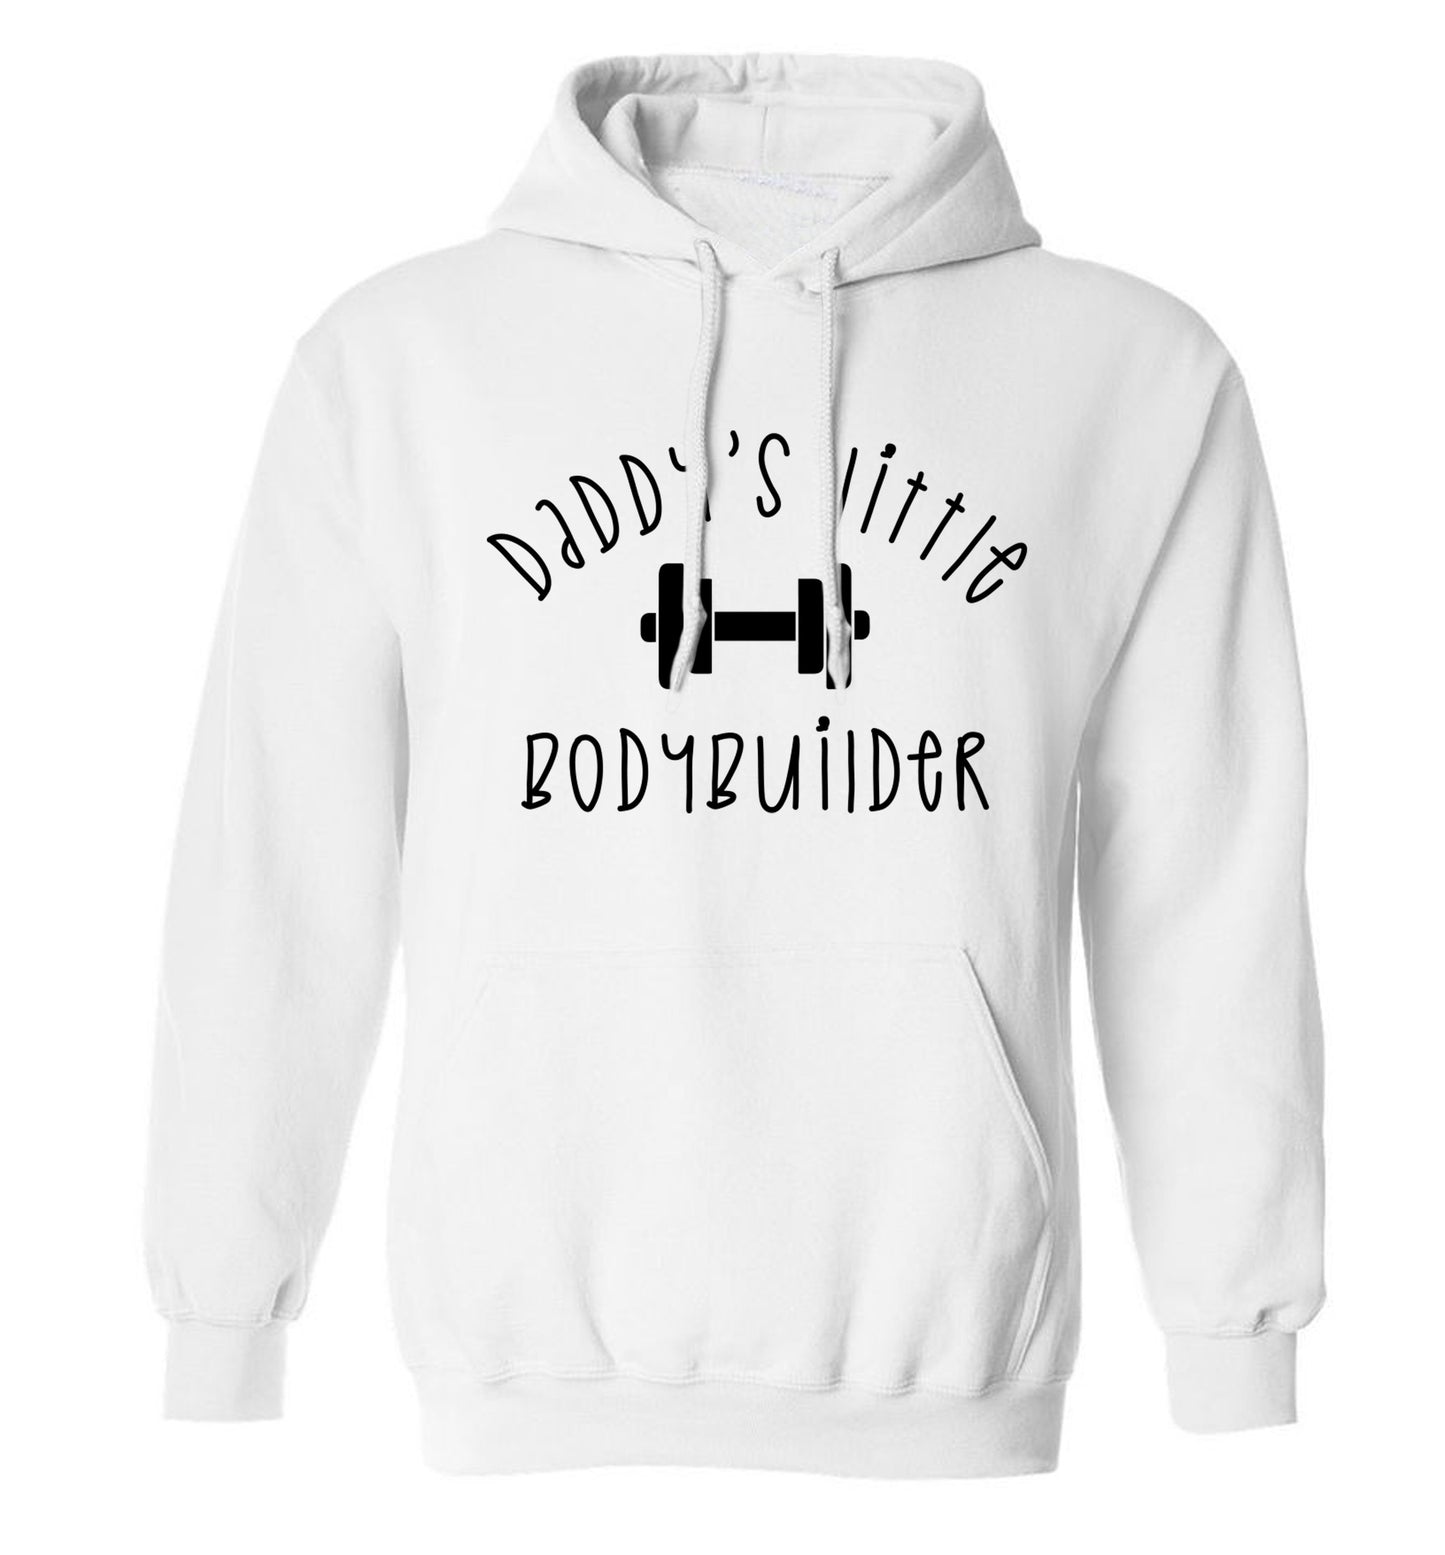 Daddy's little bodybuilder adults unisex white hoodie 2XL